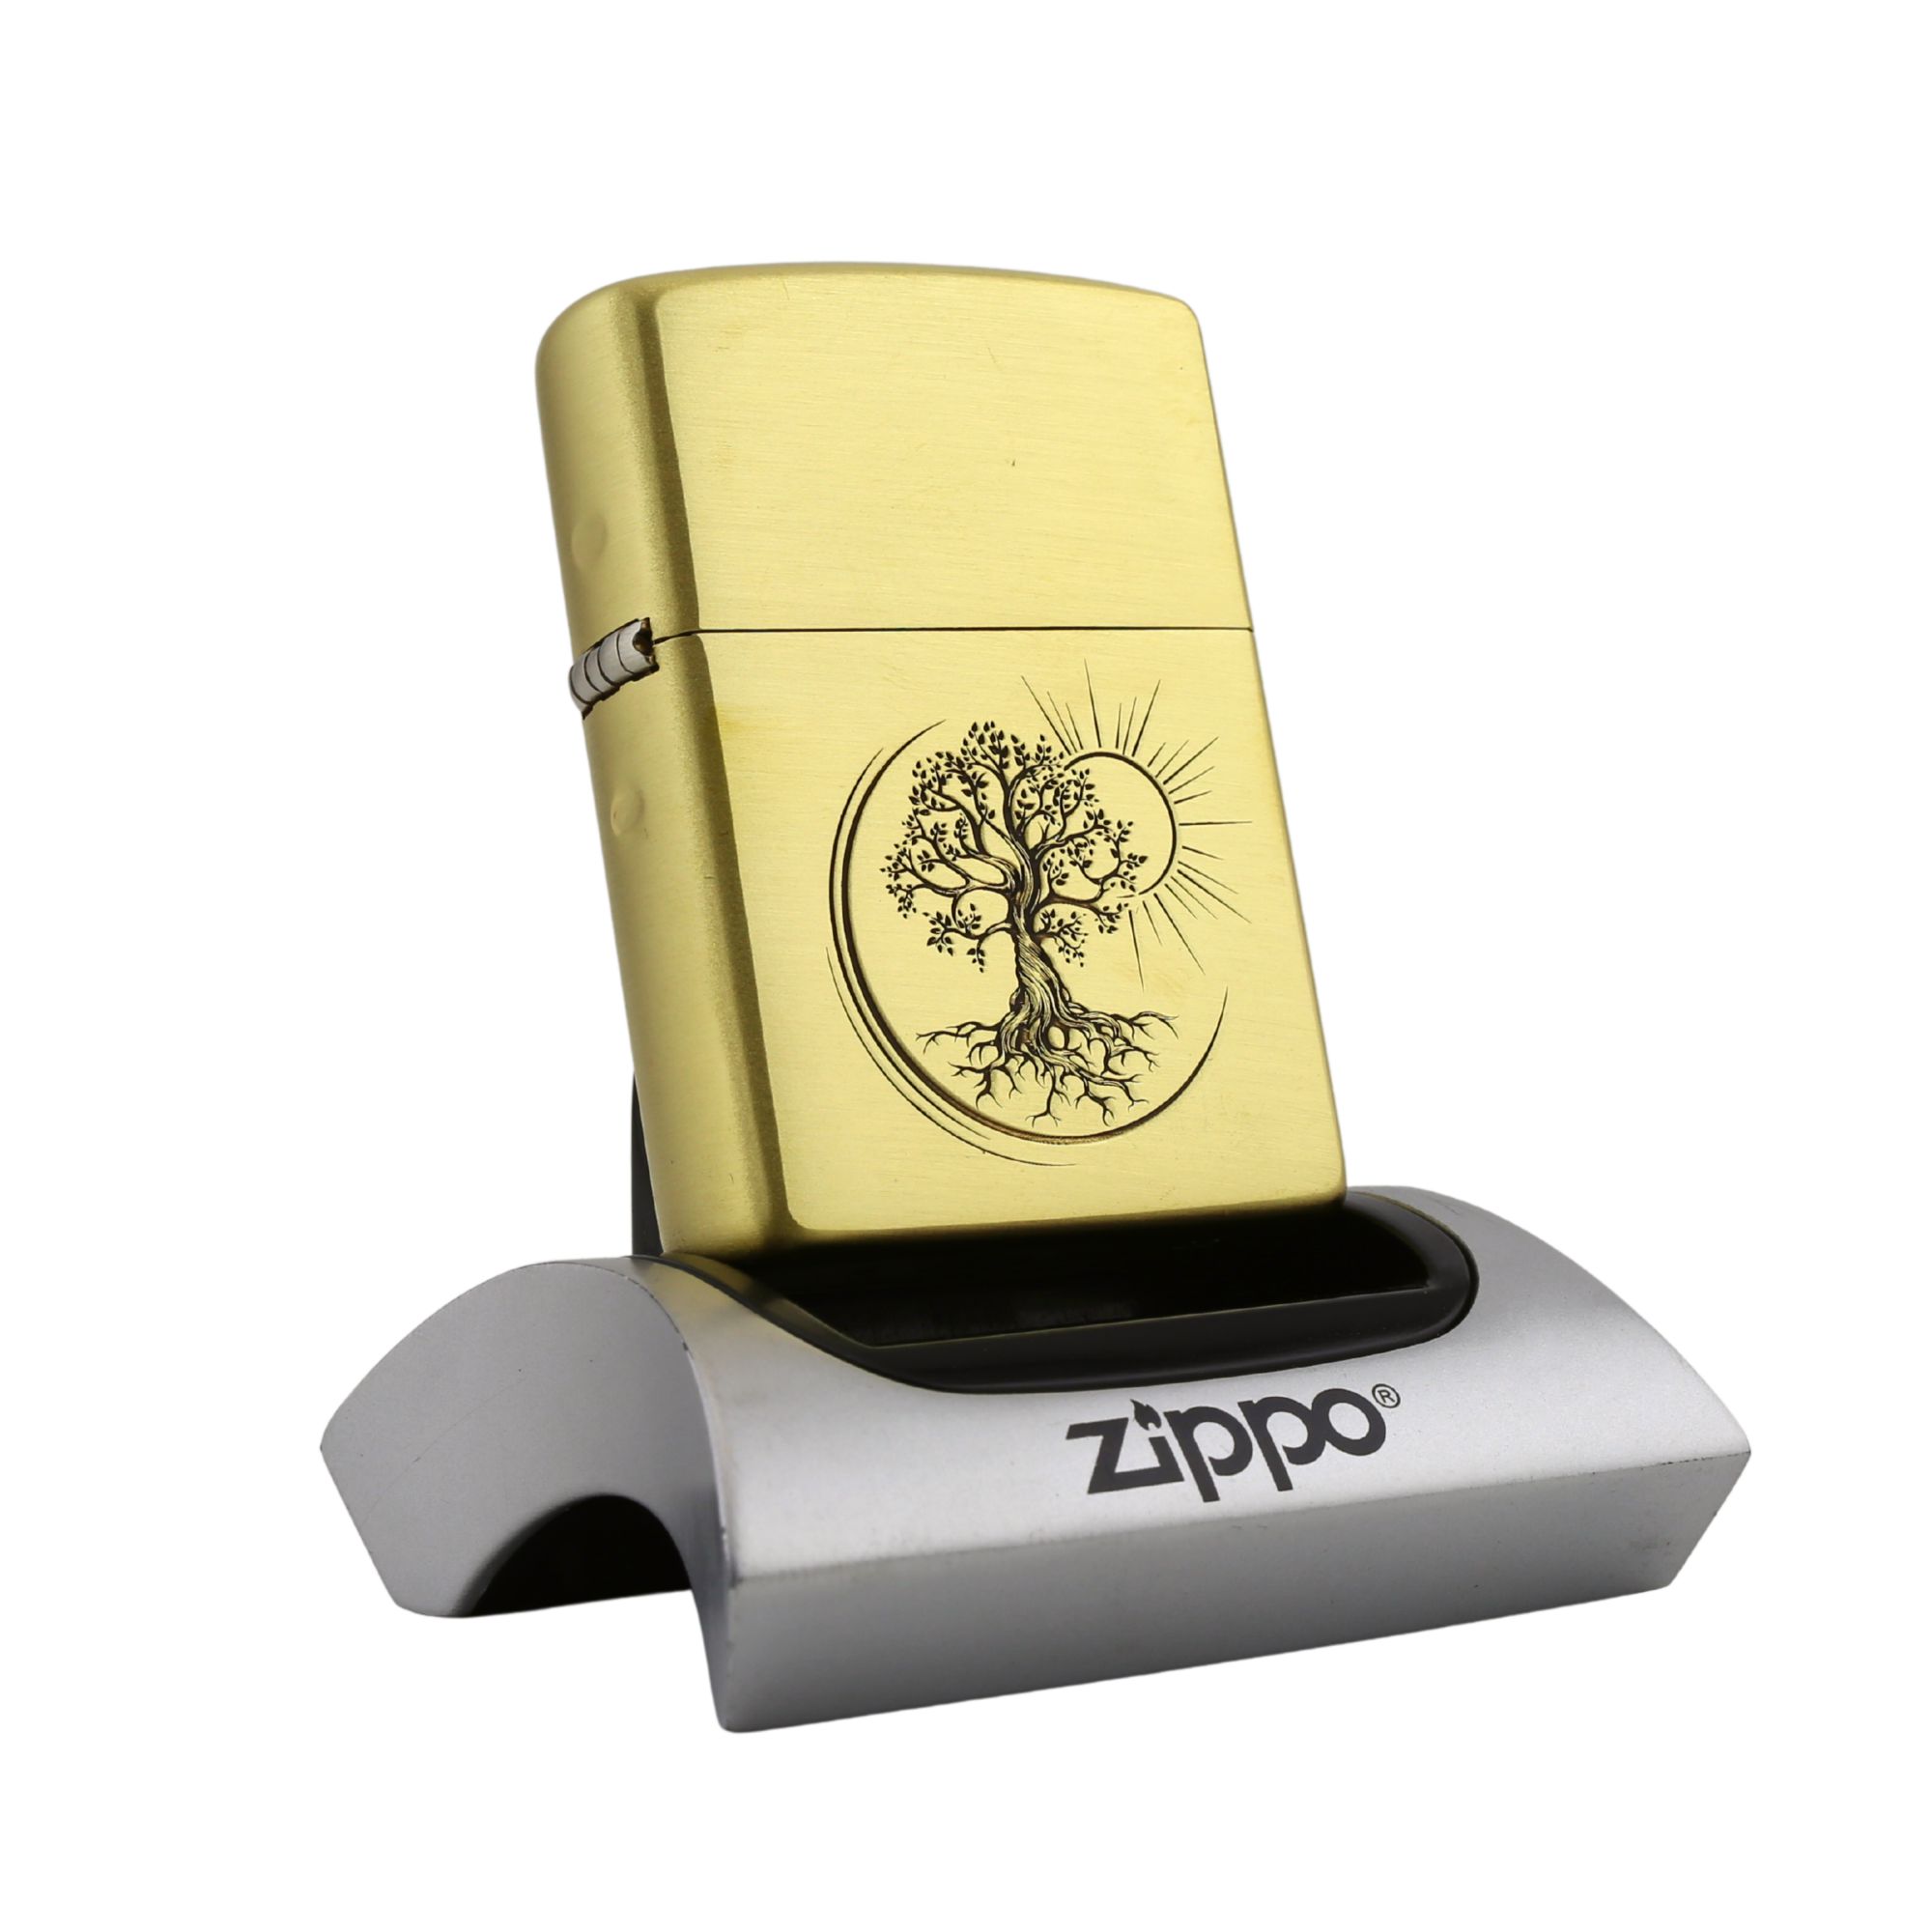 Zippo-Dong-Nguyen-Khoi-Tree-Of-Life-Cay-Doi-Vong-Doi-cua-hang-zippo-khac-ten